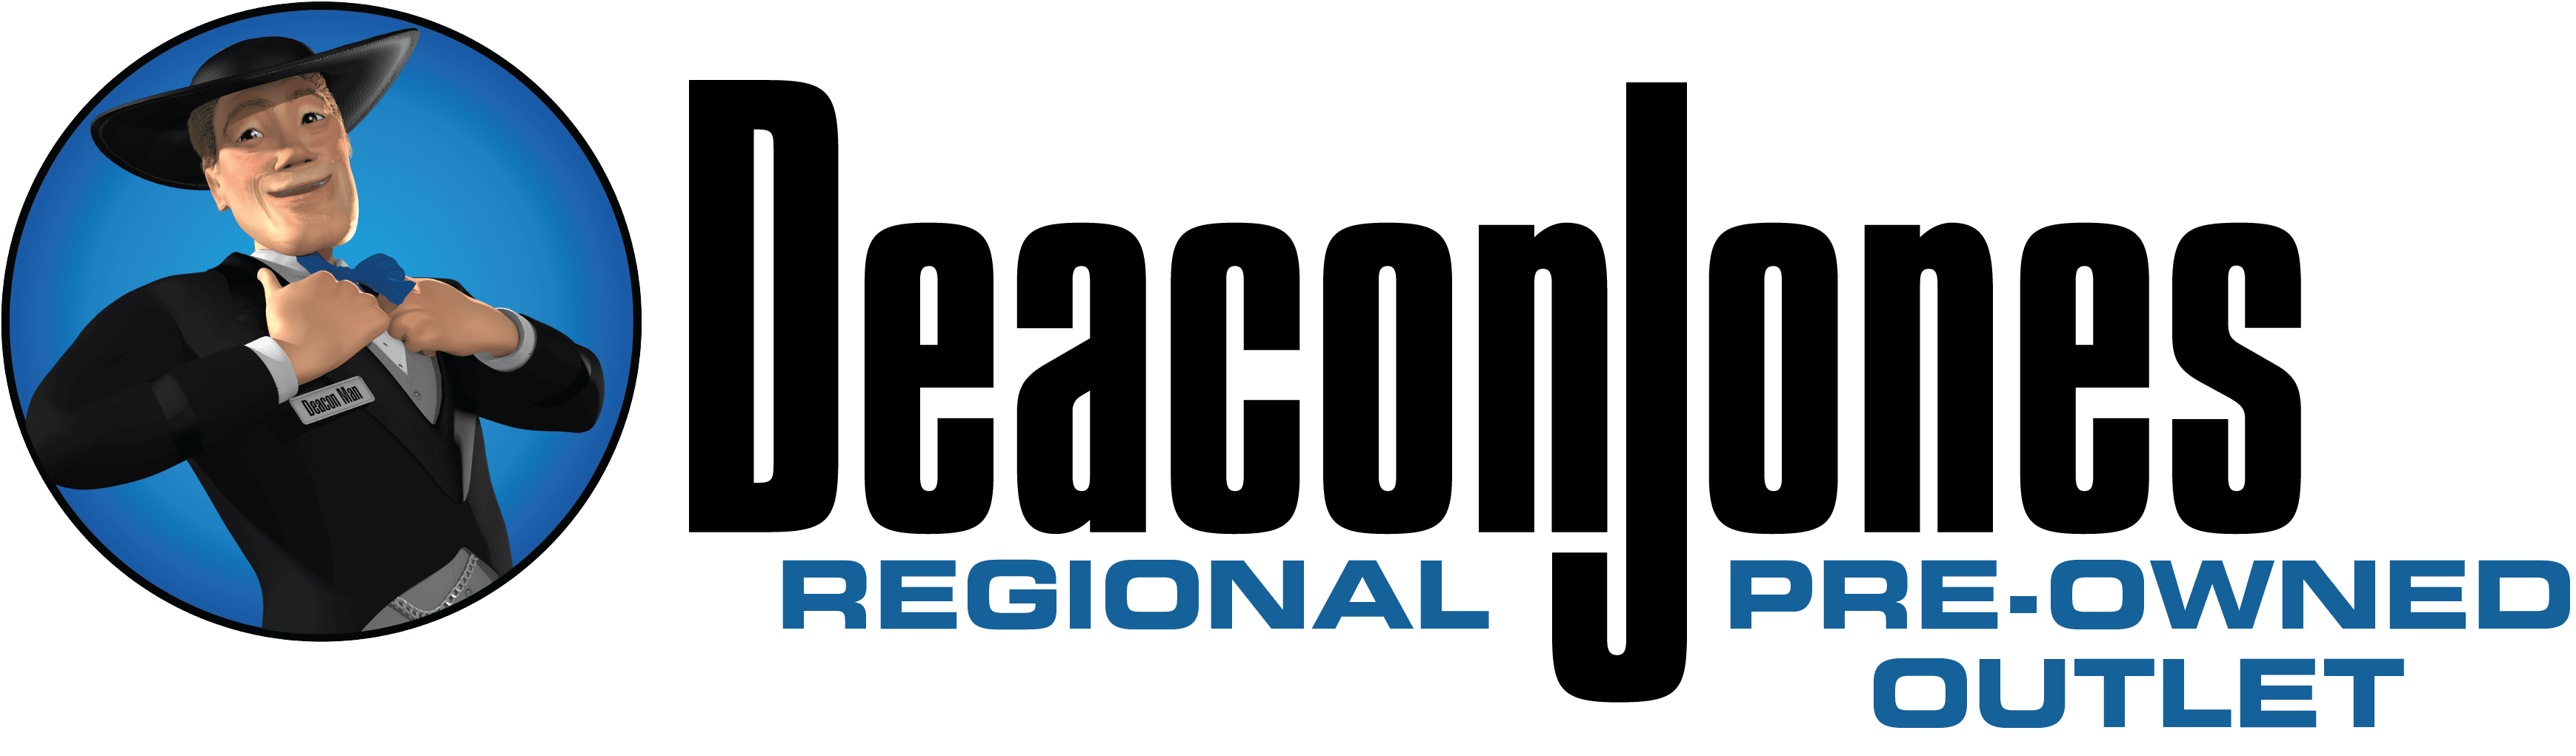 Deacon Jones Regional Pre-Owned Outlet